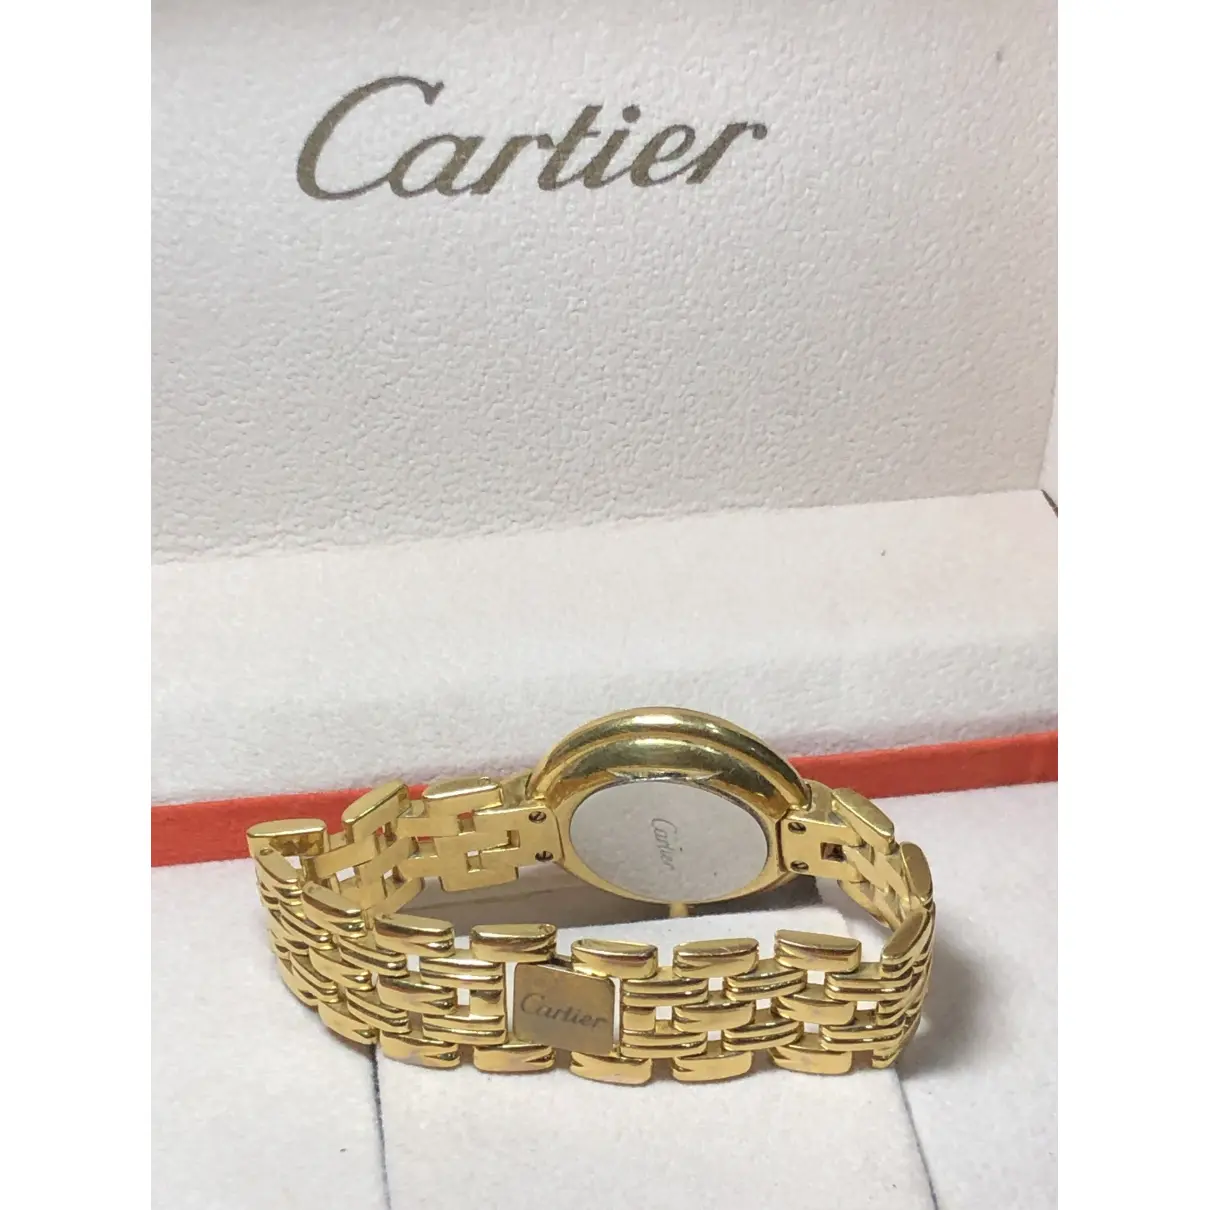 Buy Cartier Watch online - Vintage